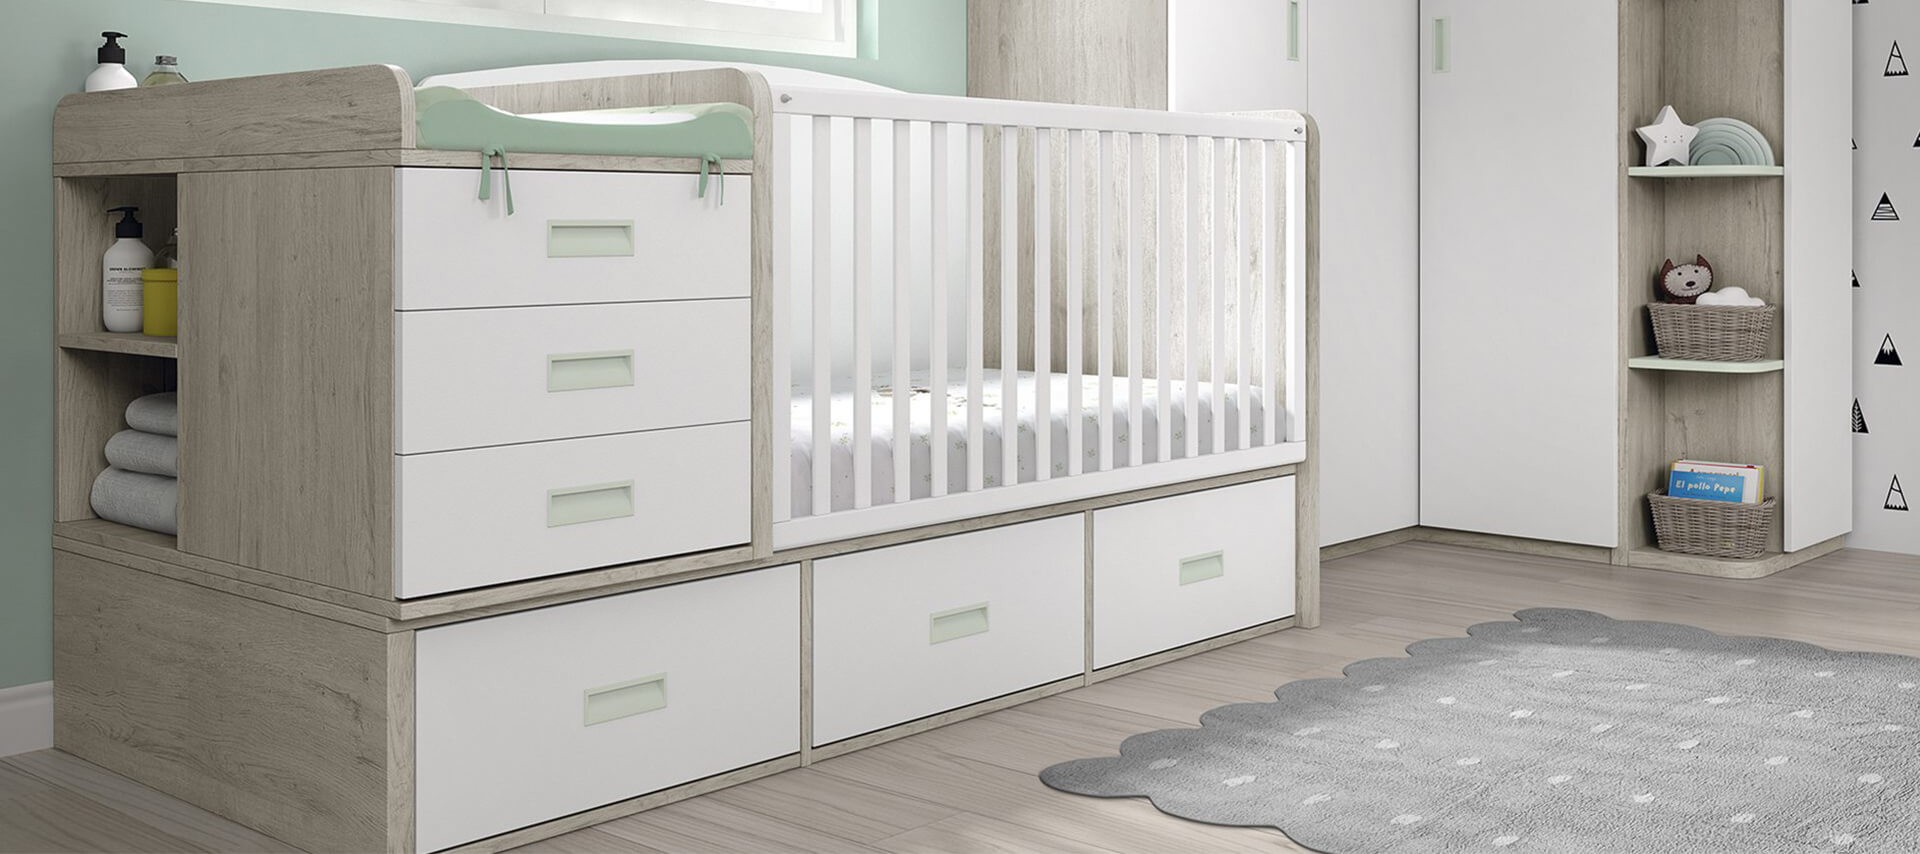 Consejos para decorar un dormitorio infantil: cunas que se transforman en cama